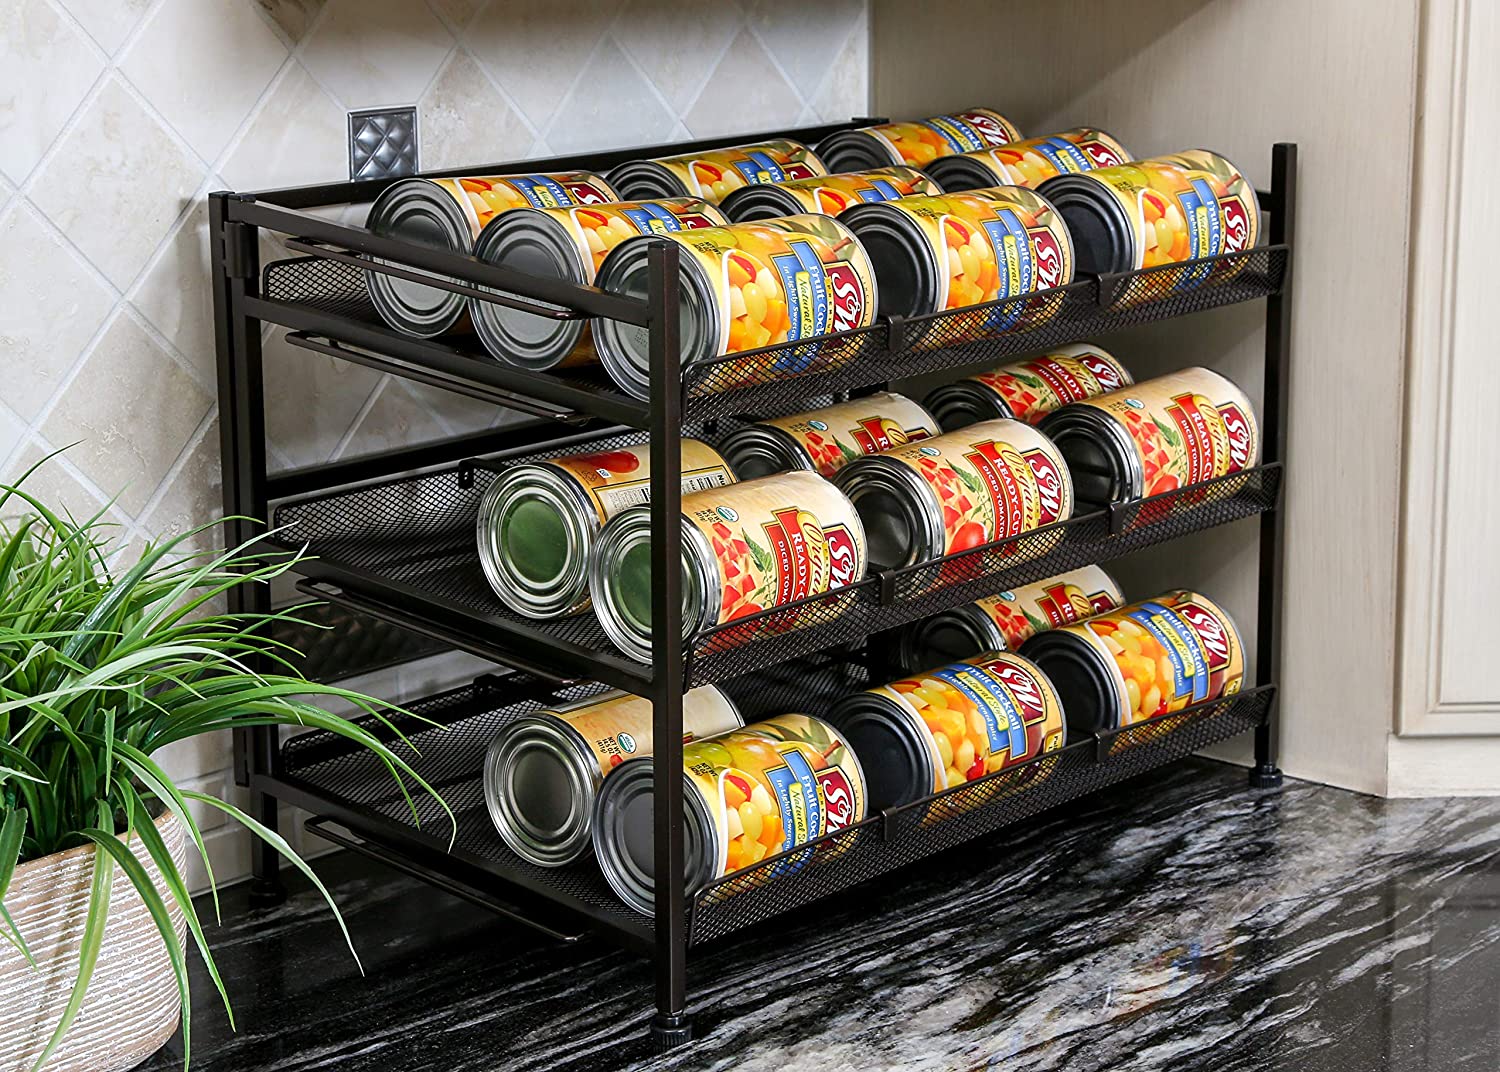 https://www.shopsmartdesign.com/cdn/shop/products/3-tier-canned-food-organizer-smart-design-kitchen-8214182-incrementing-number-974409.jpg?v=1679346610